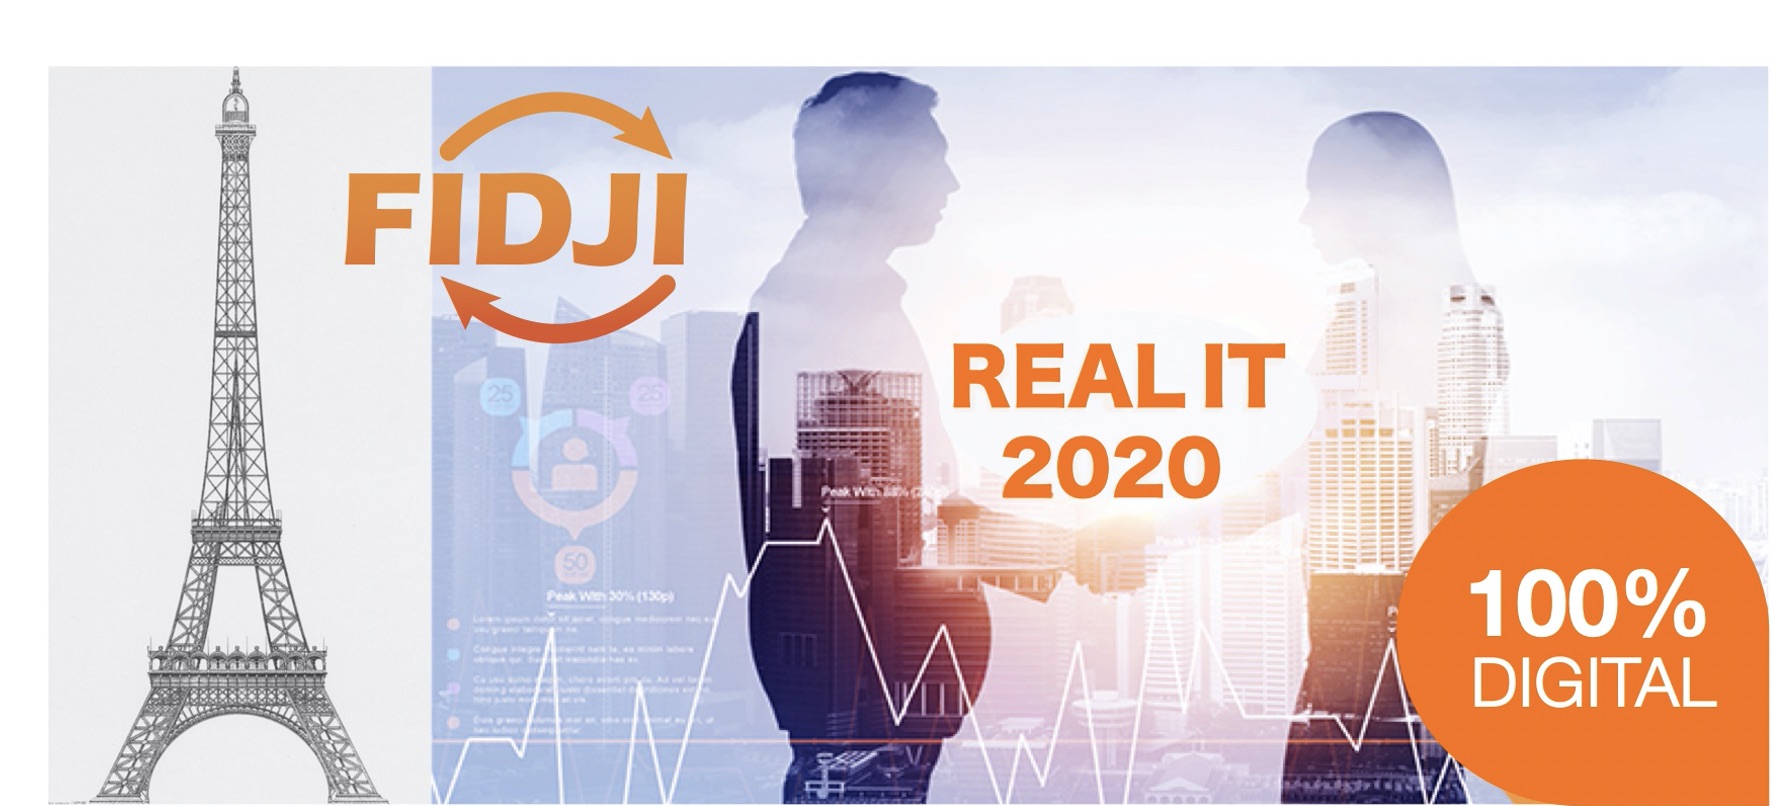 REAL IT 2020 : Les vidéobox de cet évènement 100% digital